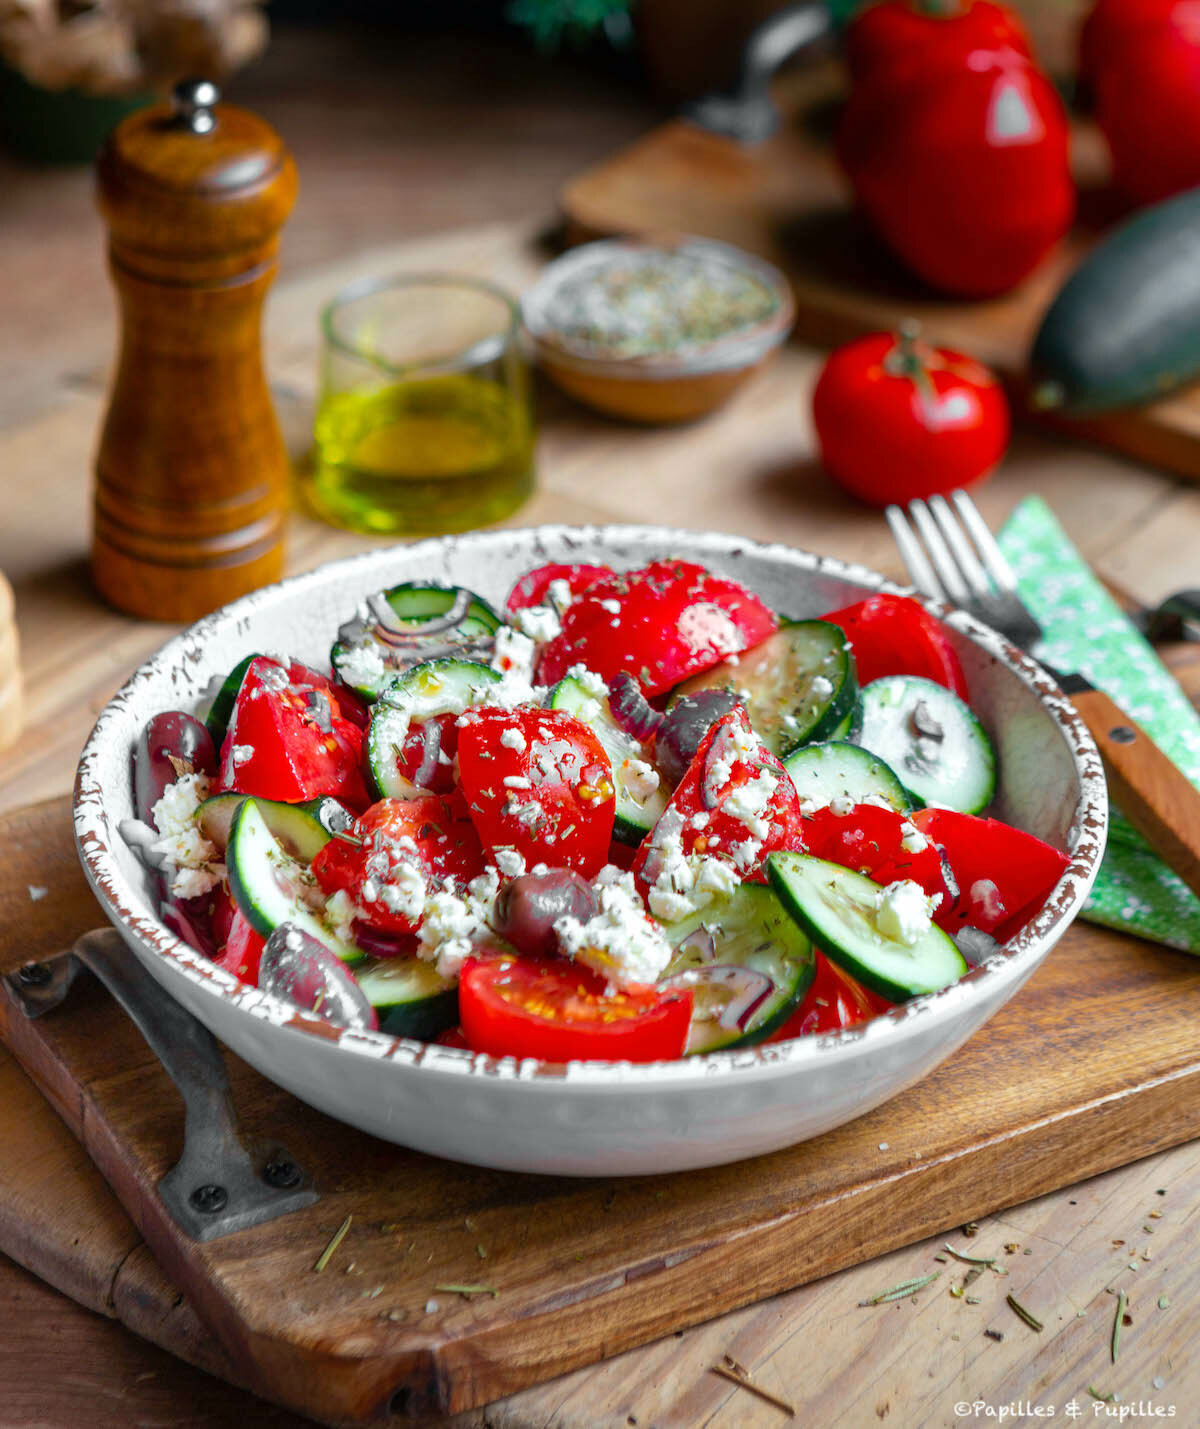 Salade grecque traditionnelle : une recette estivale